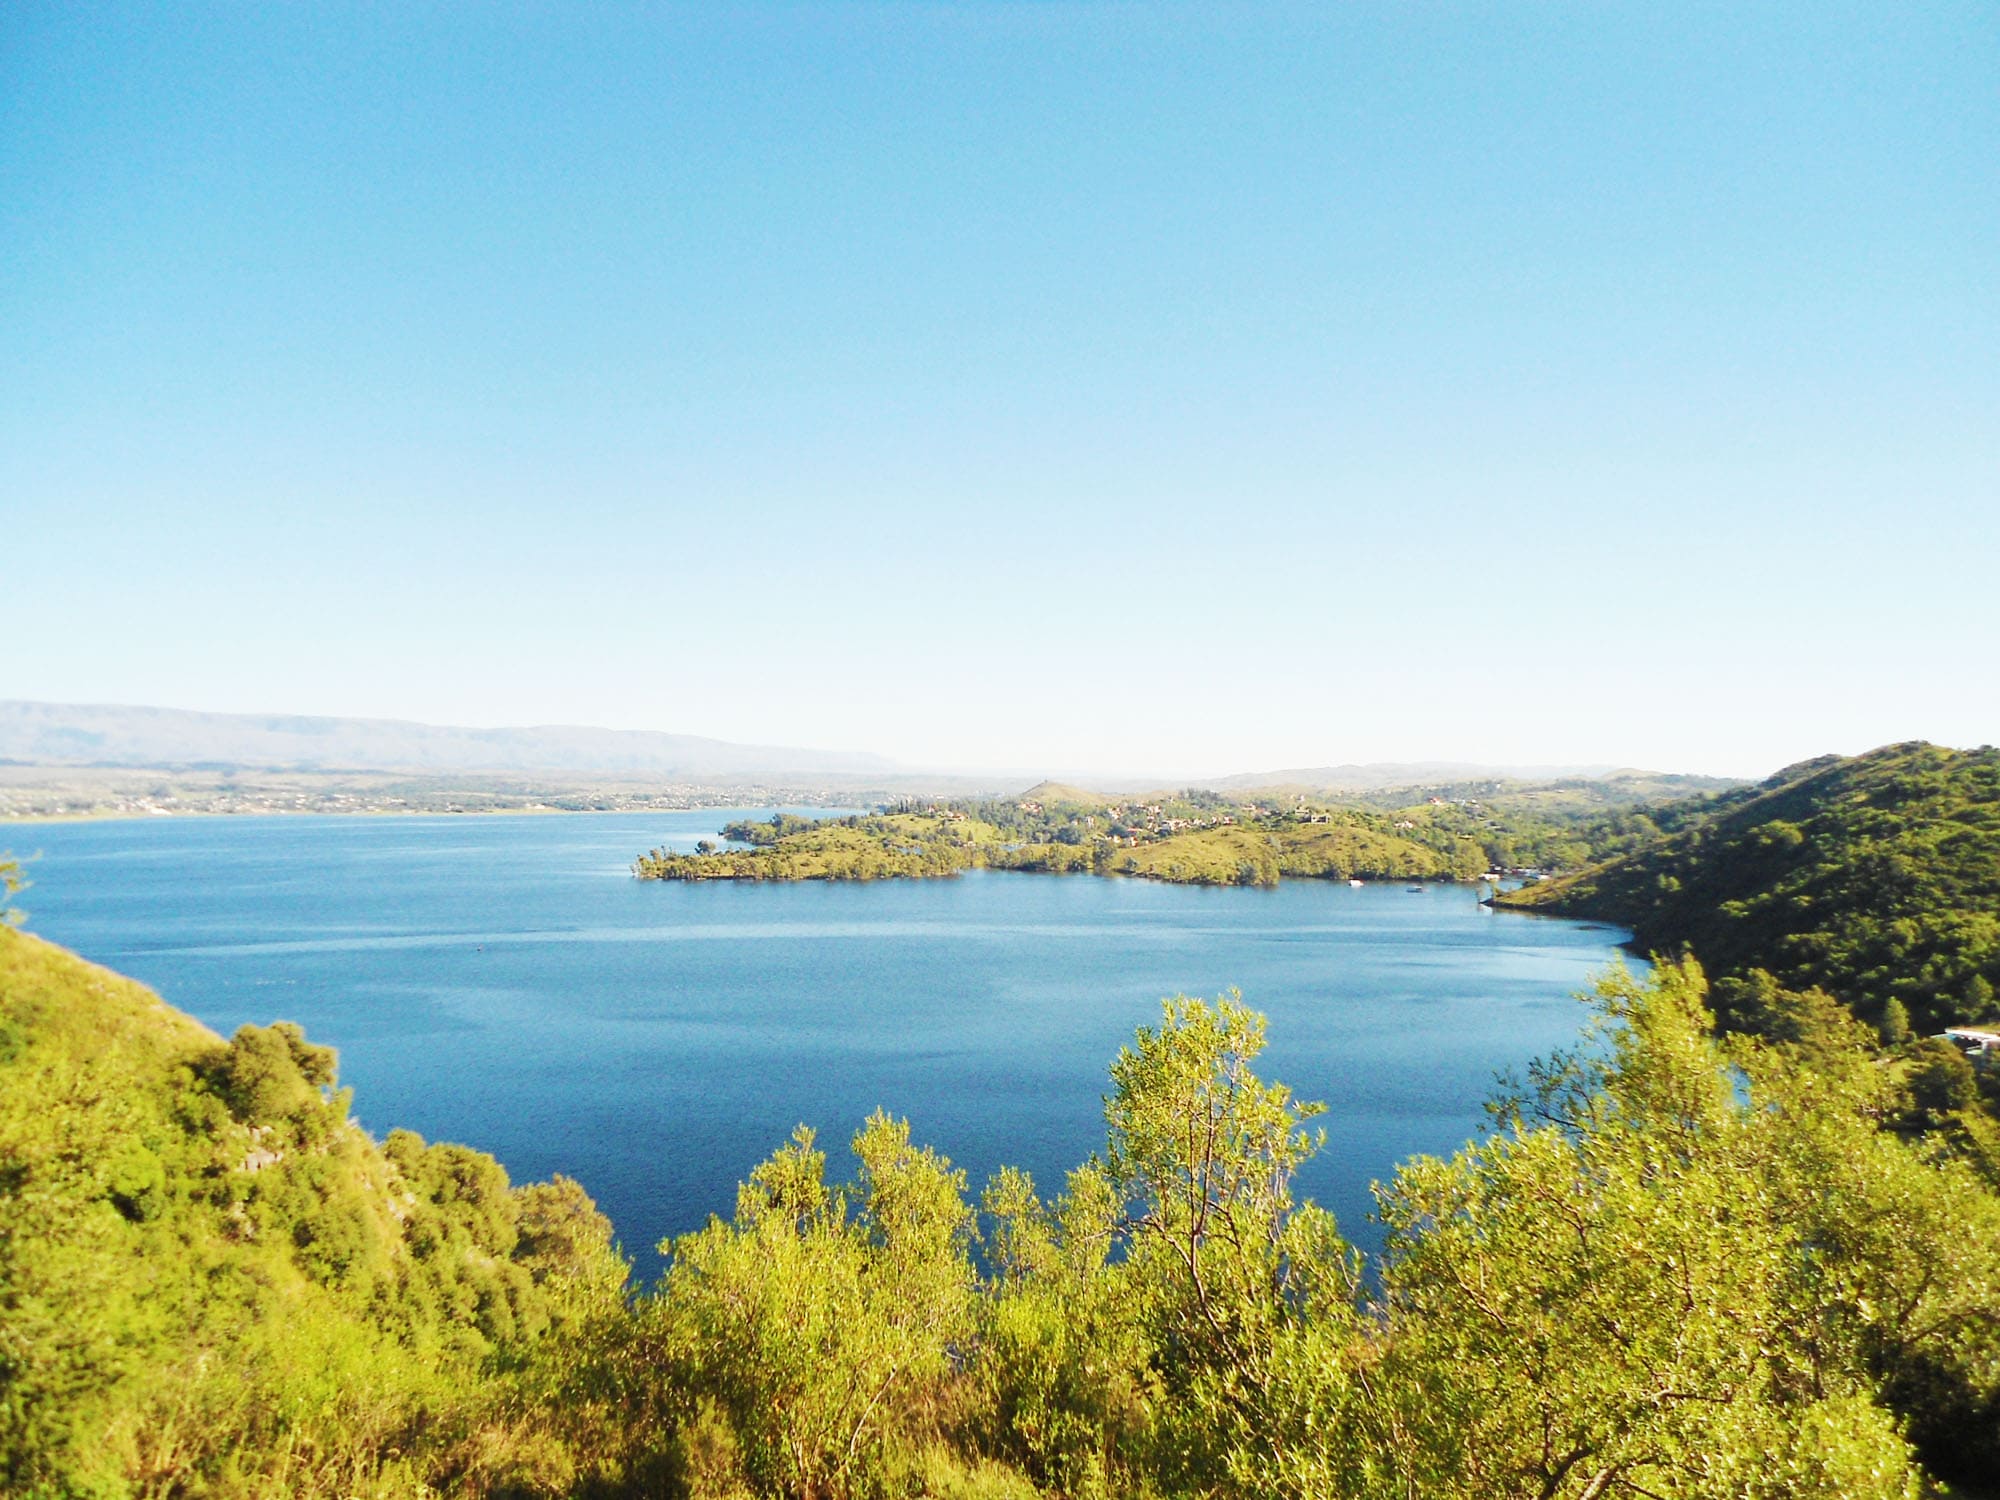 Un lago oculto entre las sierras de Córdoba - Dique Los Molinos